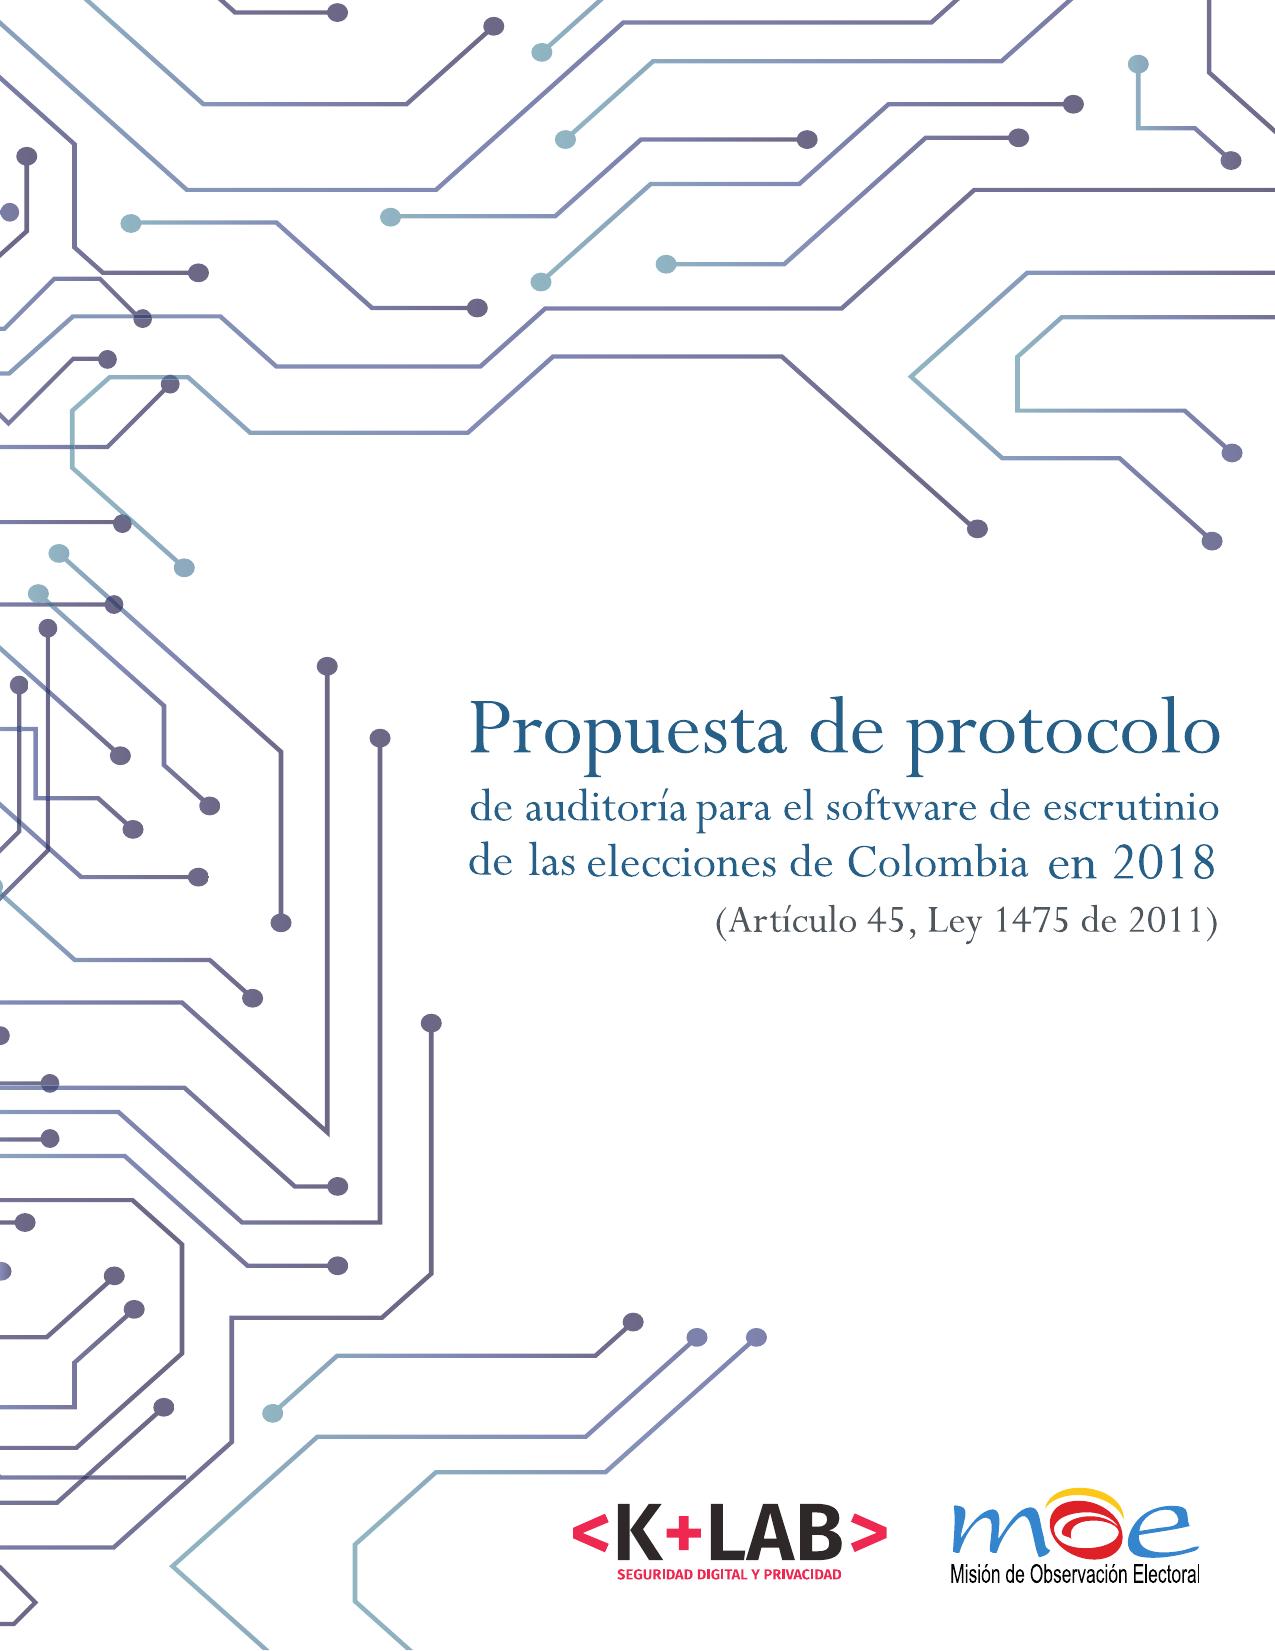 Propuesta de protocolo de auditoría para el software de escrutinio de las elecciones de Colombia en 2018